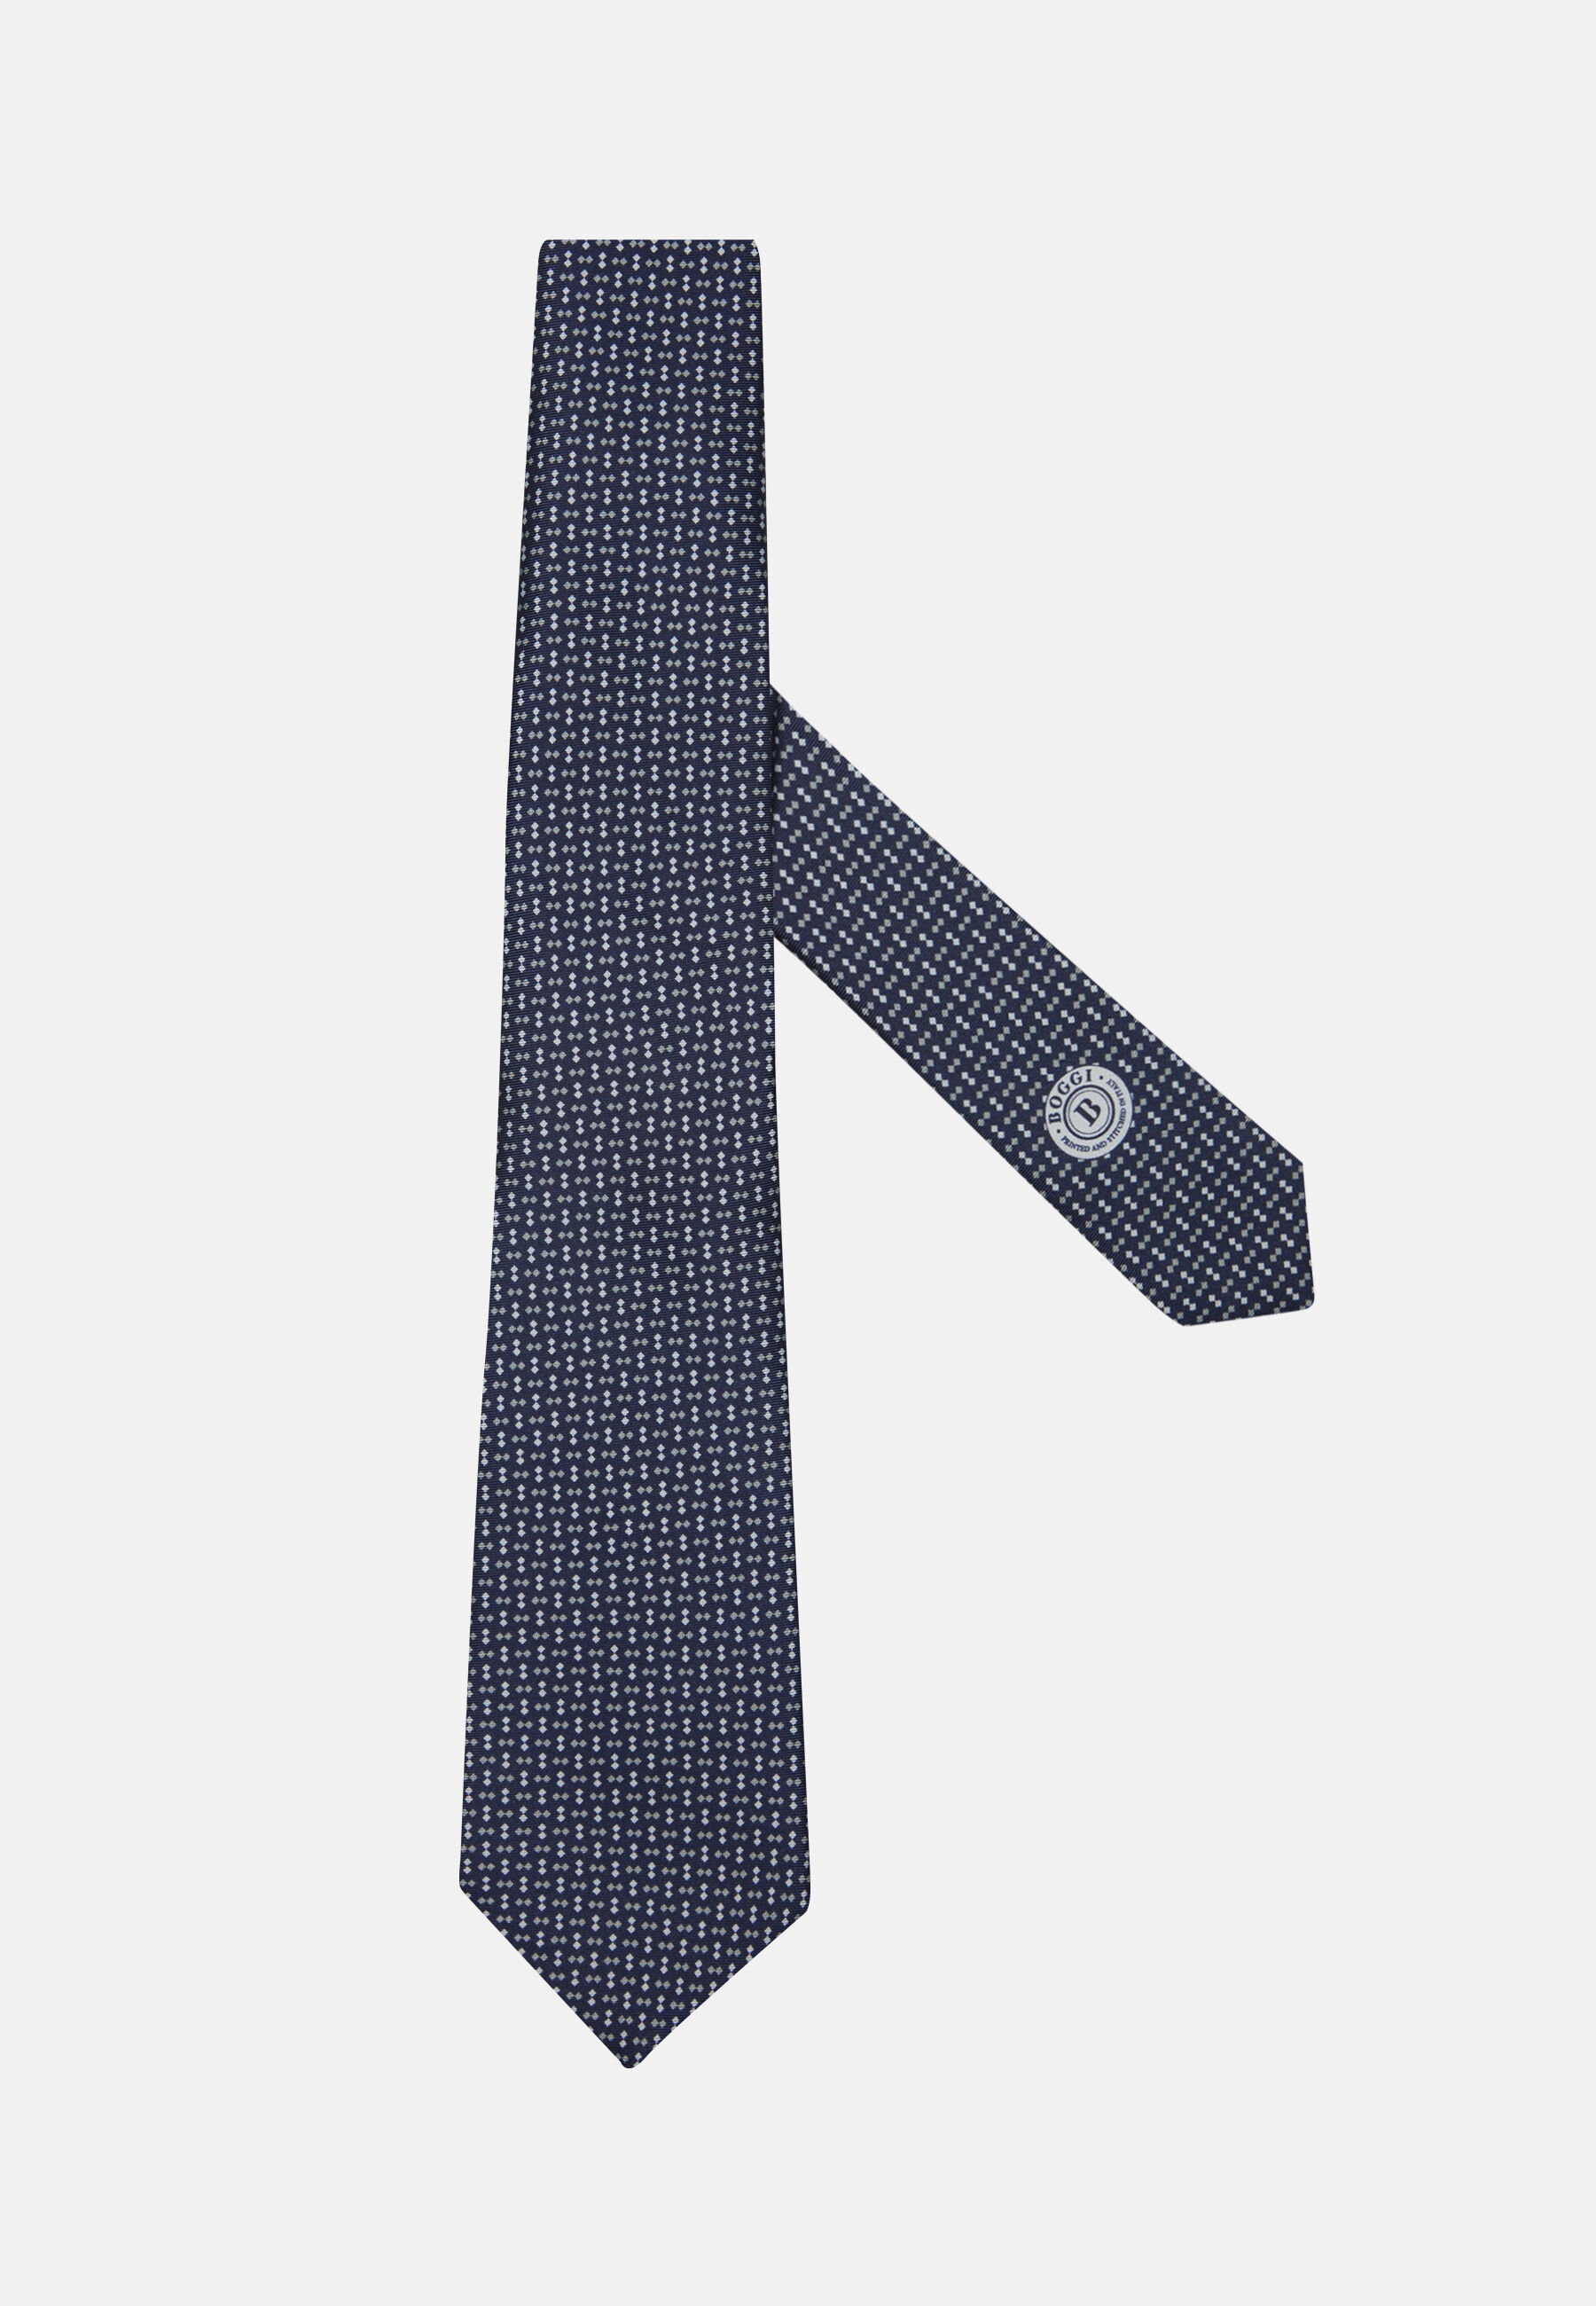 Cravatta Micro Design In Seta Boggi Uomo Accessori Cravatte e accessori Cravatte 